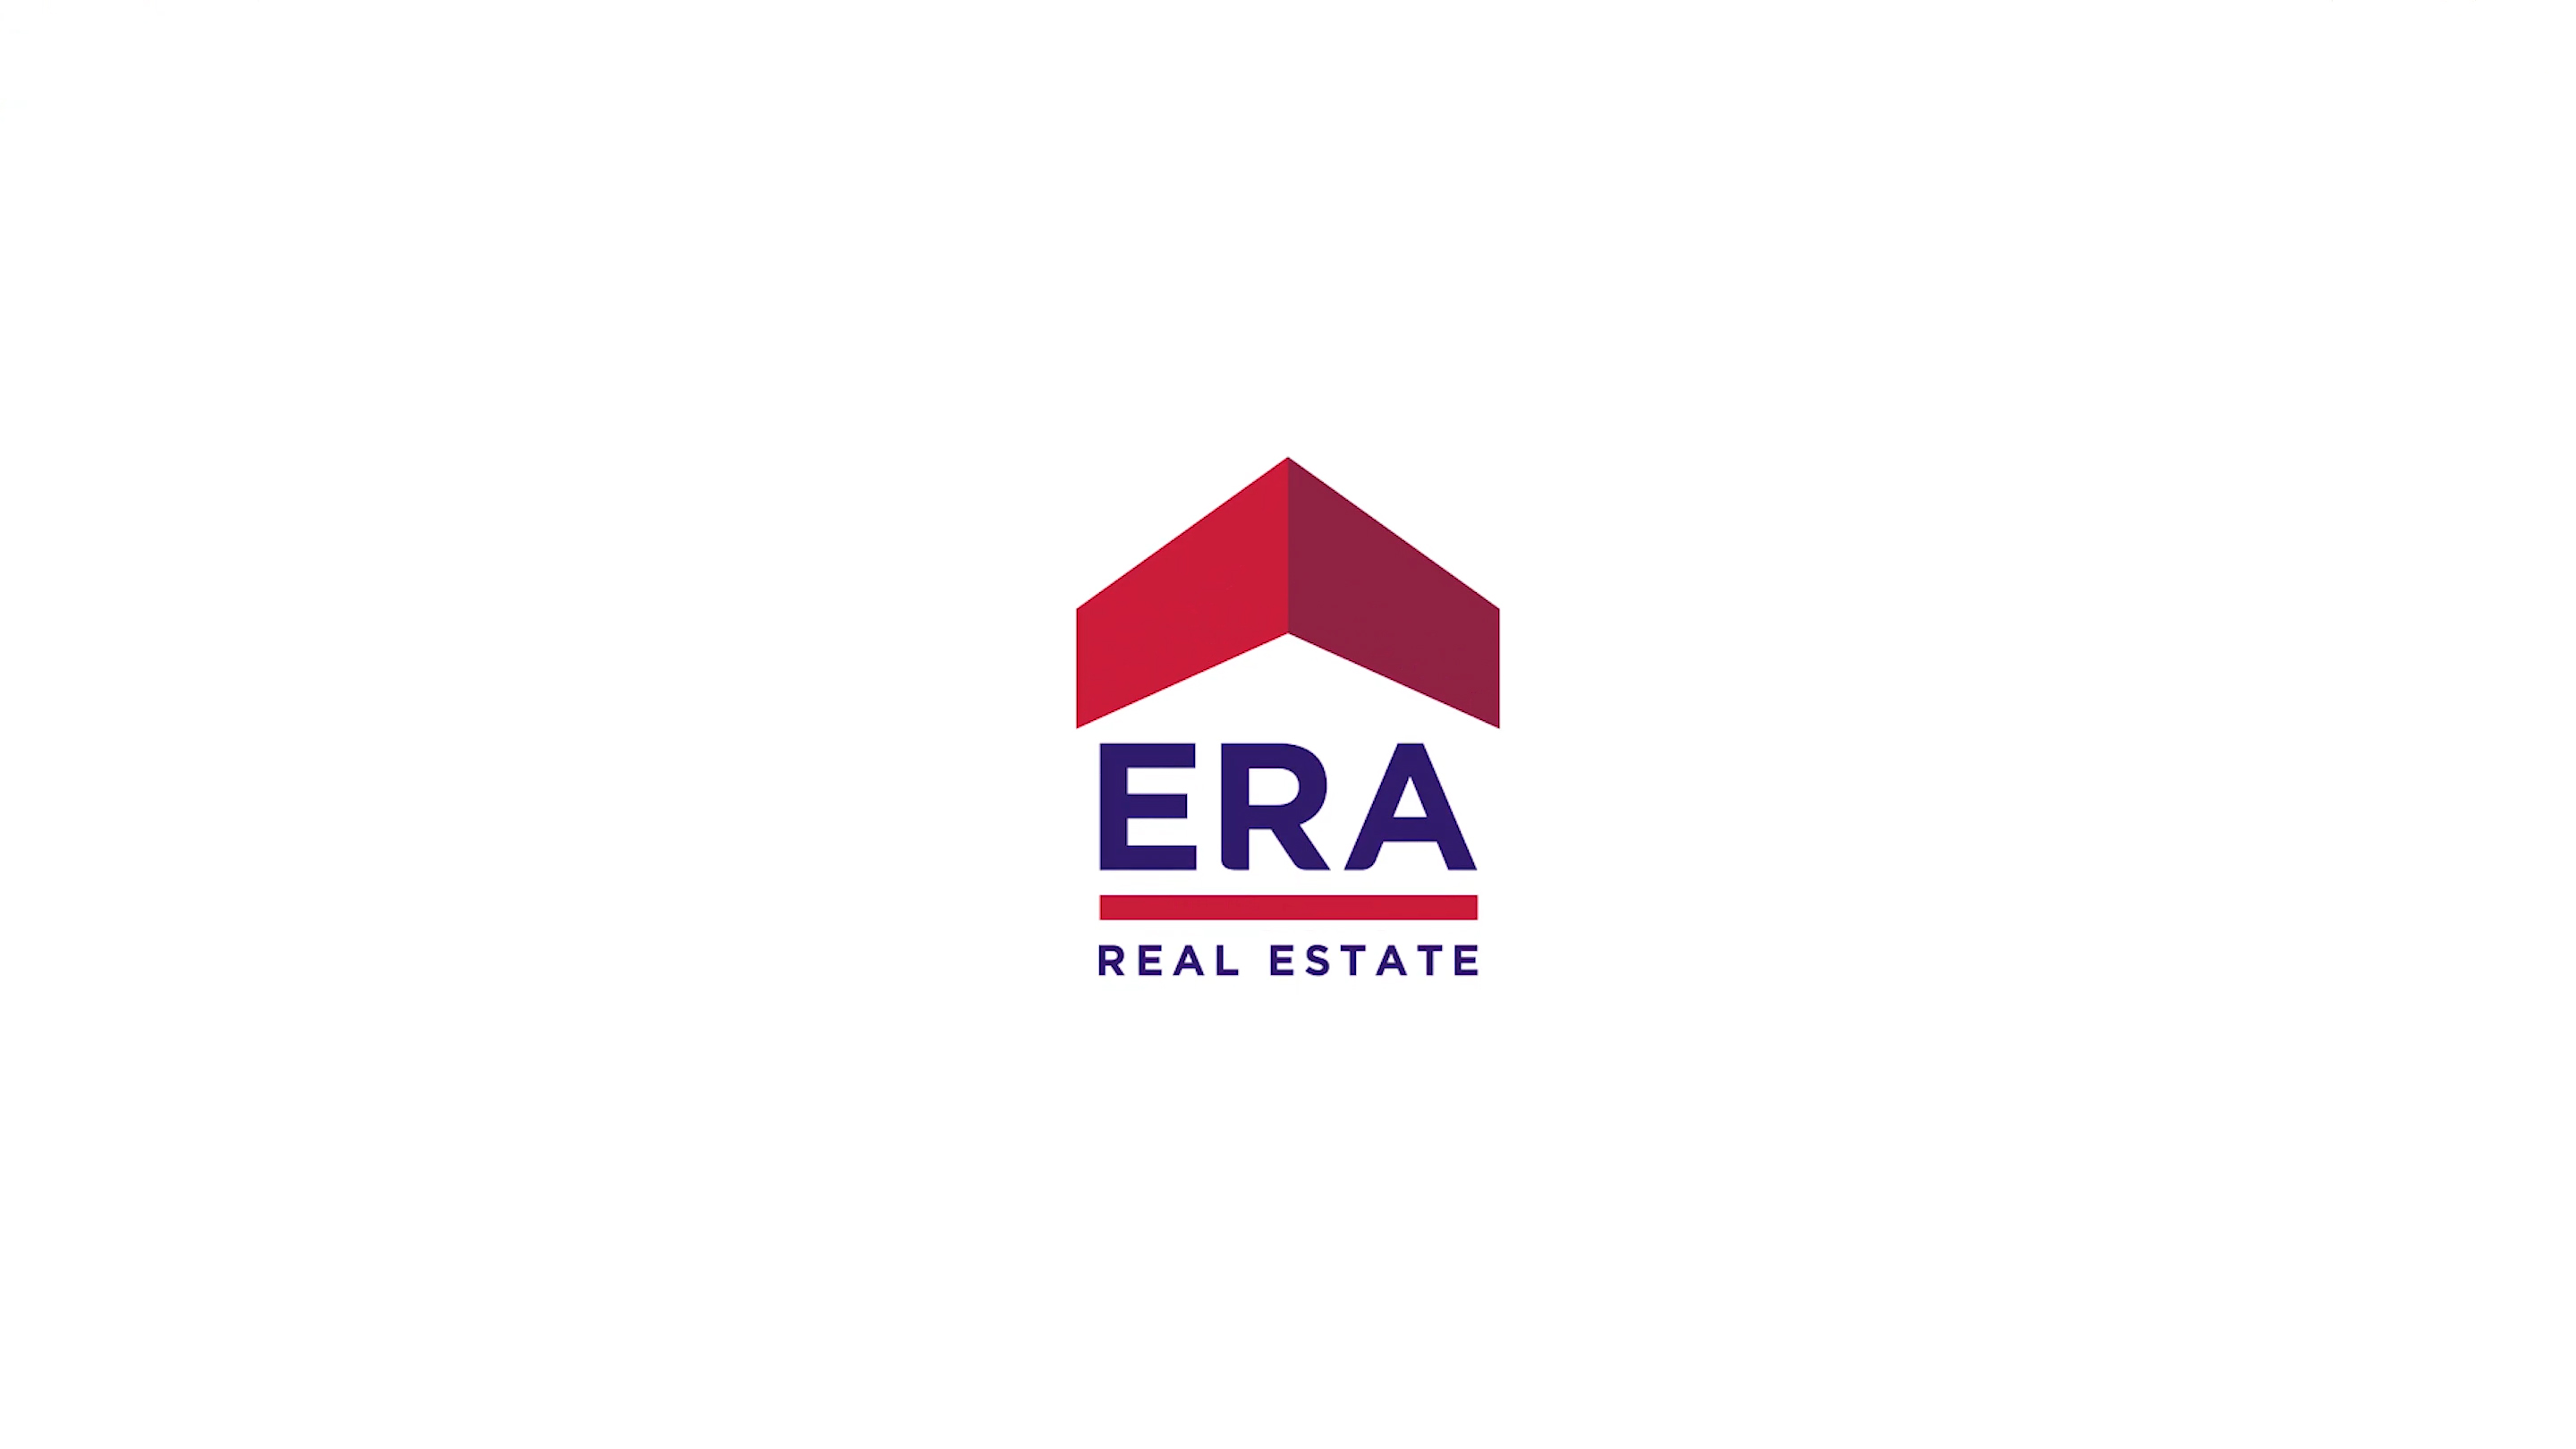 Een afbeelding met het ERA logo op een witte achtergrond.